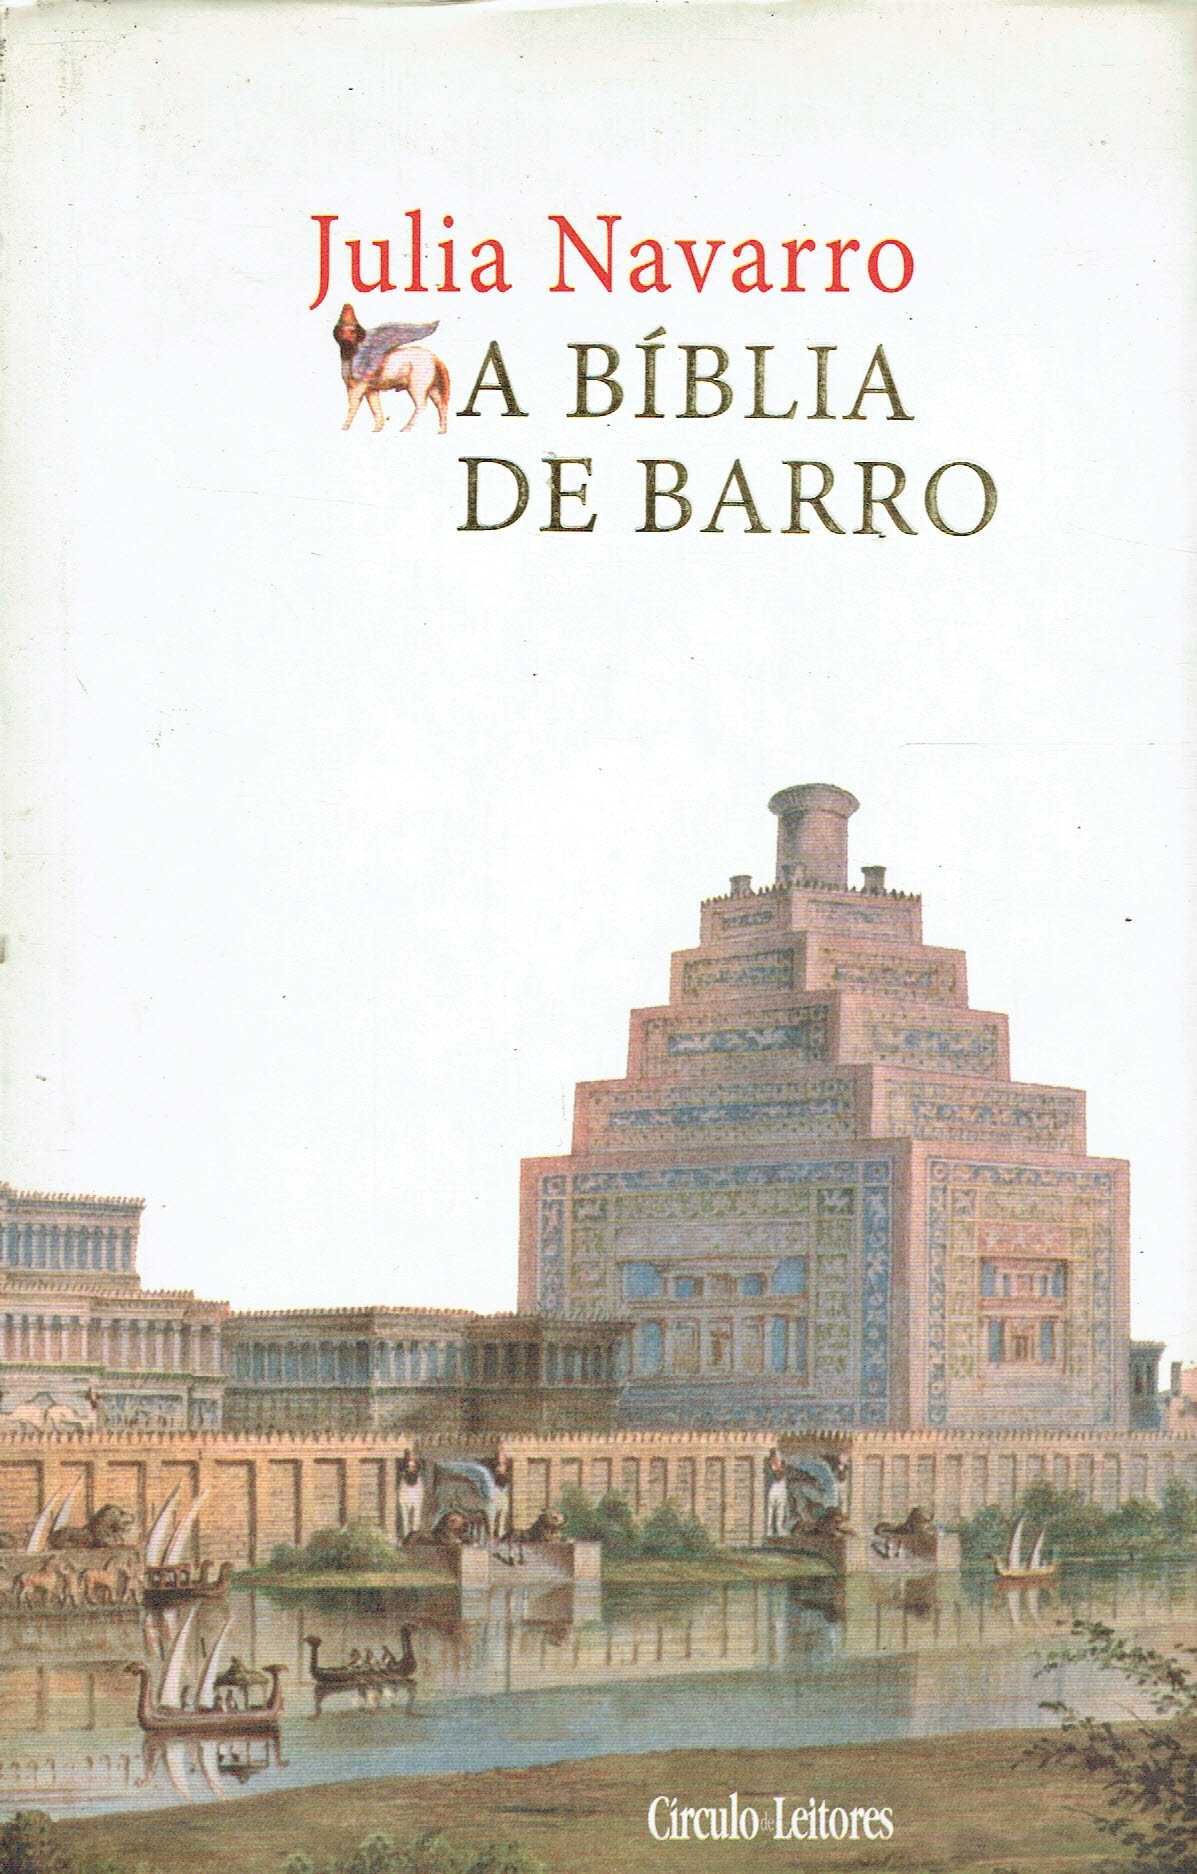 5976

A Bíblia de Barro
de Julia Navarro